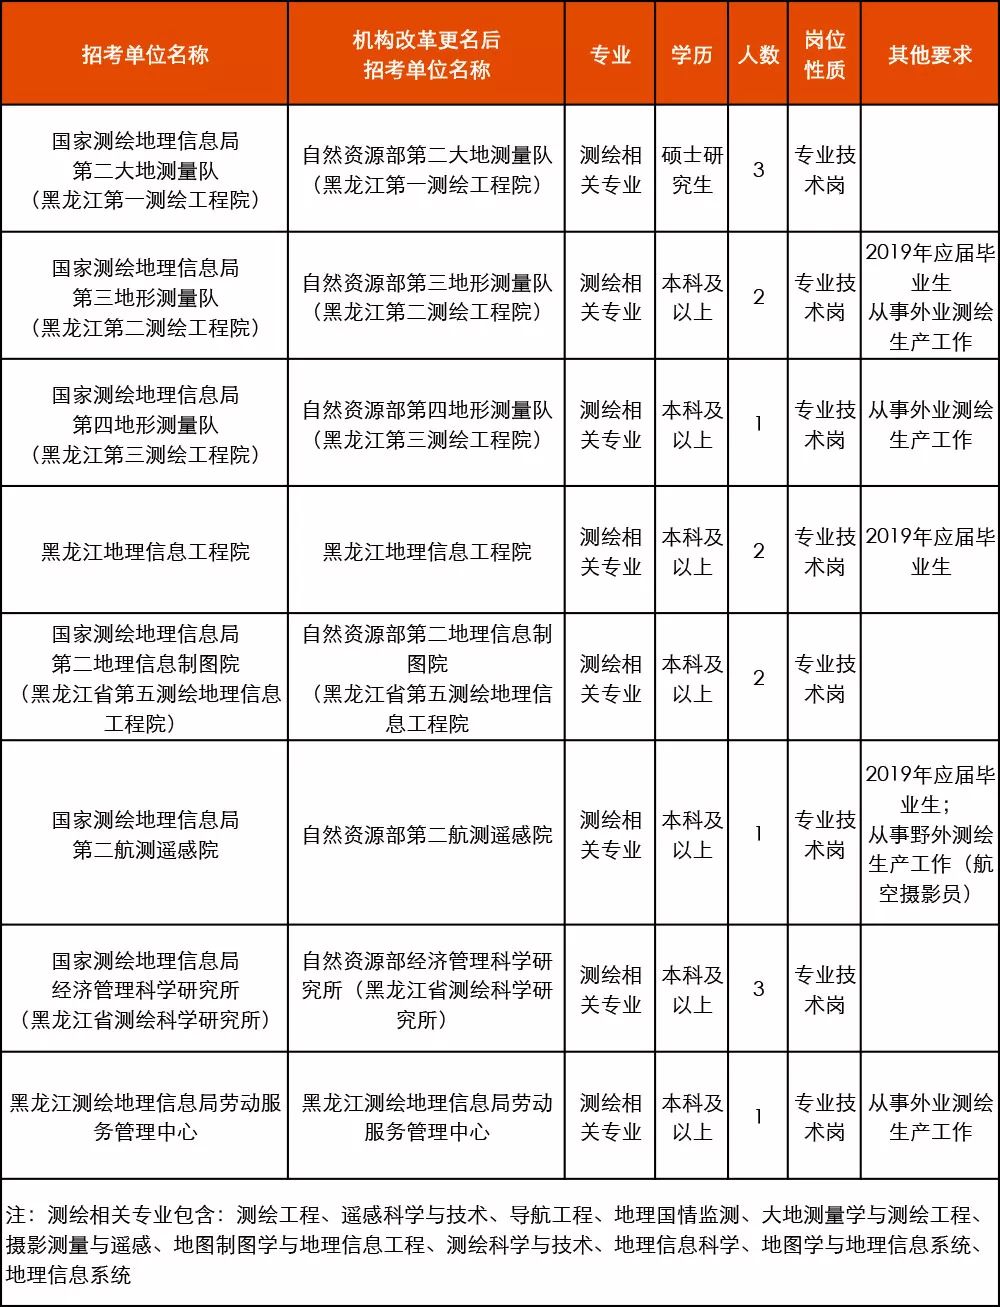 招聘地理信息_2013中国地理信息产业大型招聘会 春季招聘会(2)